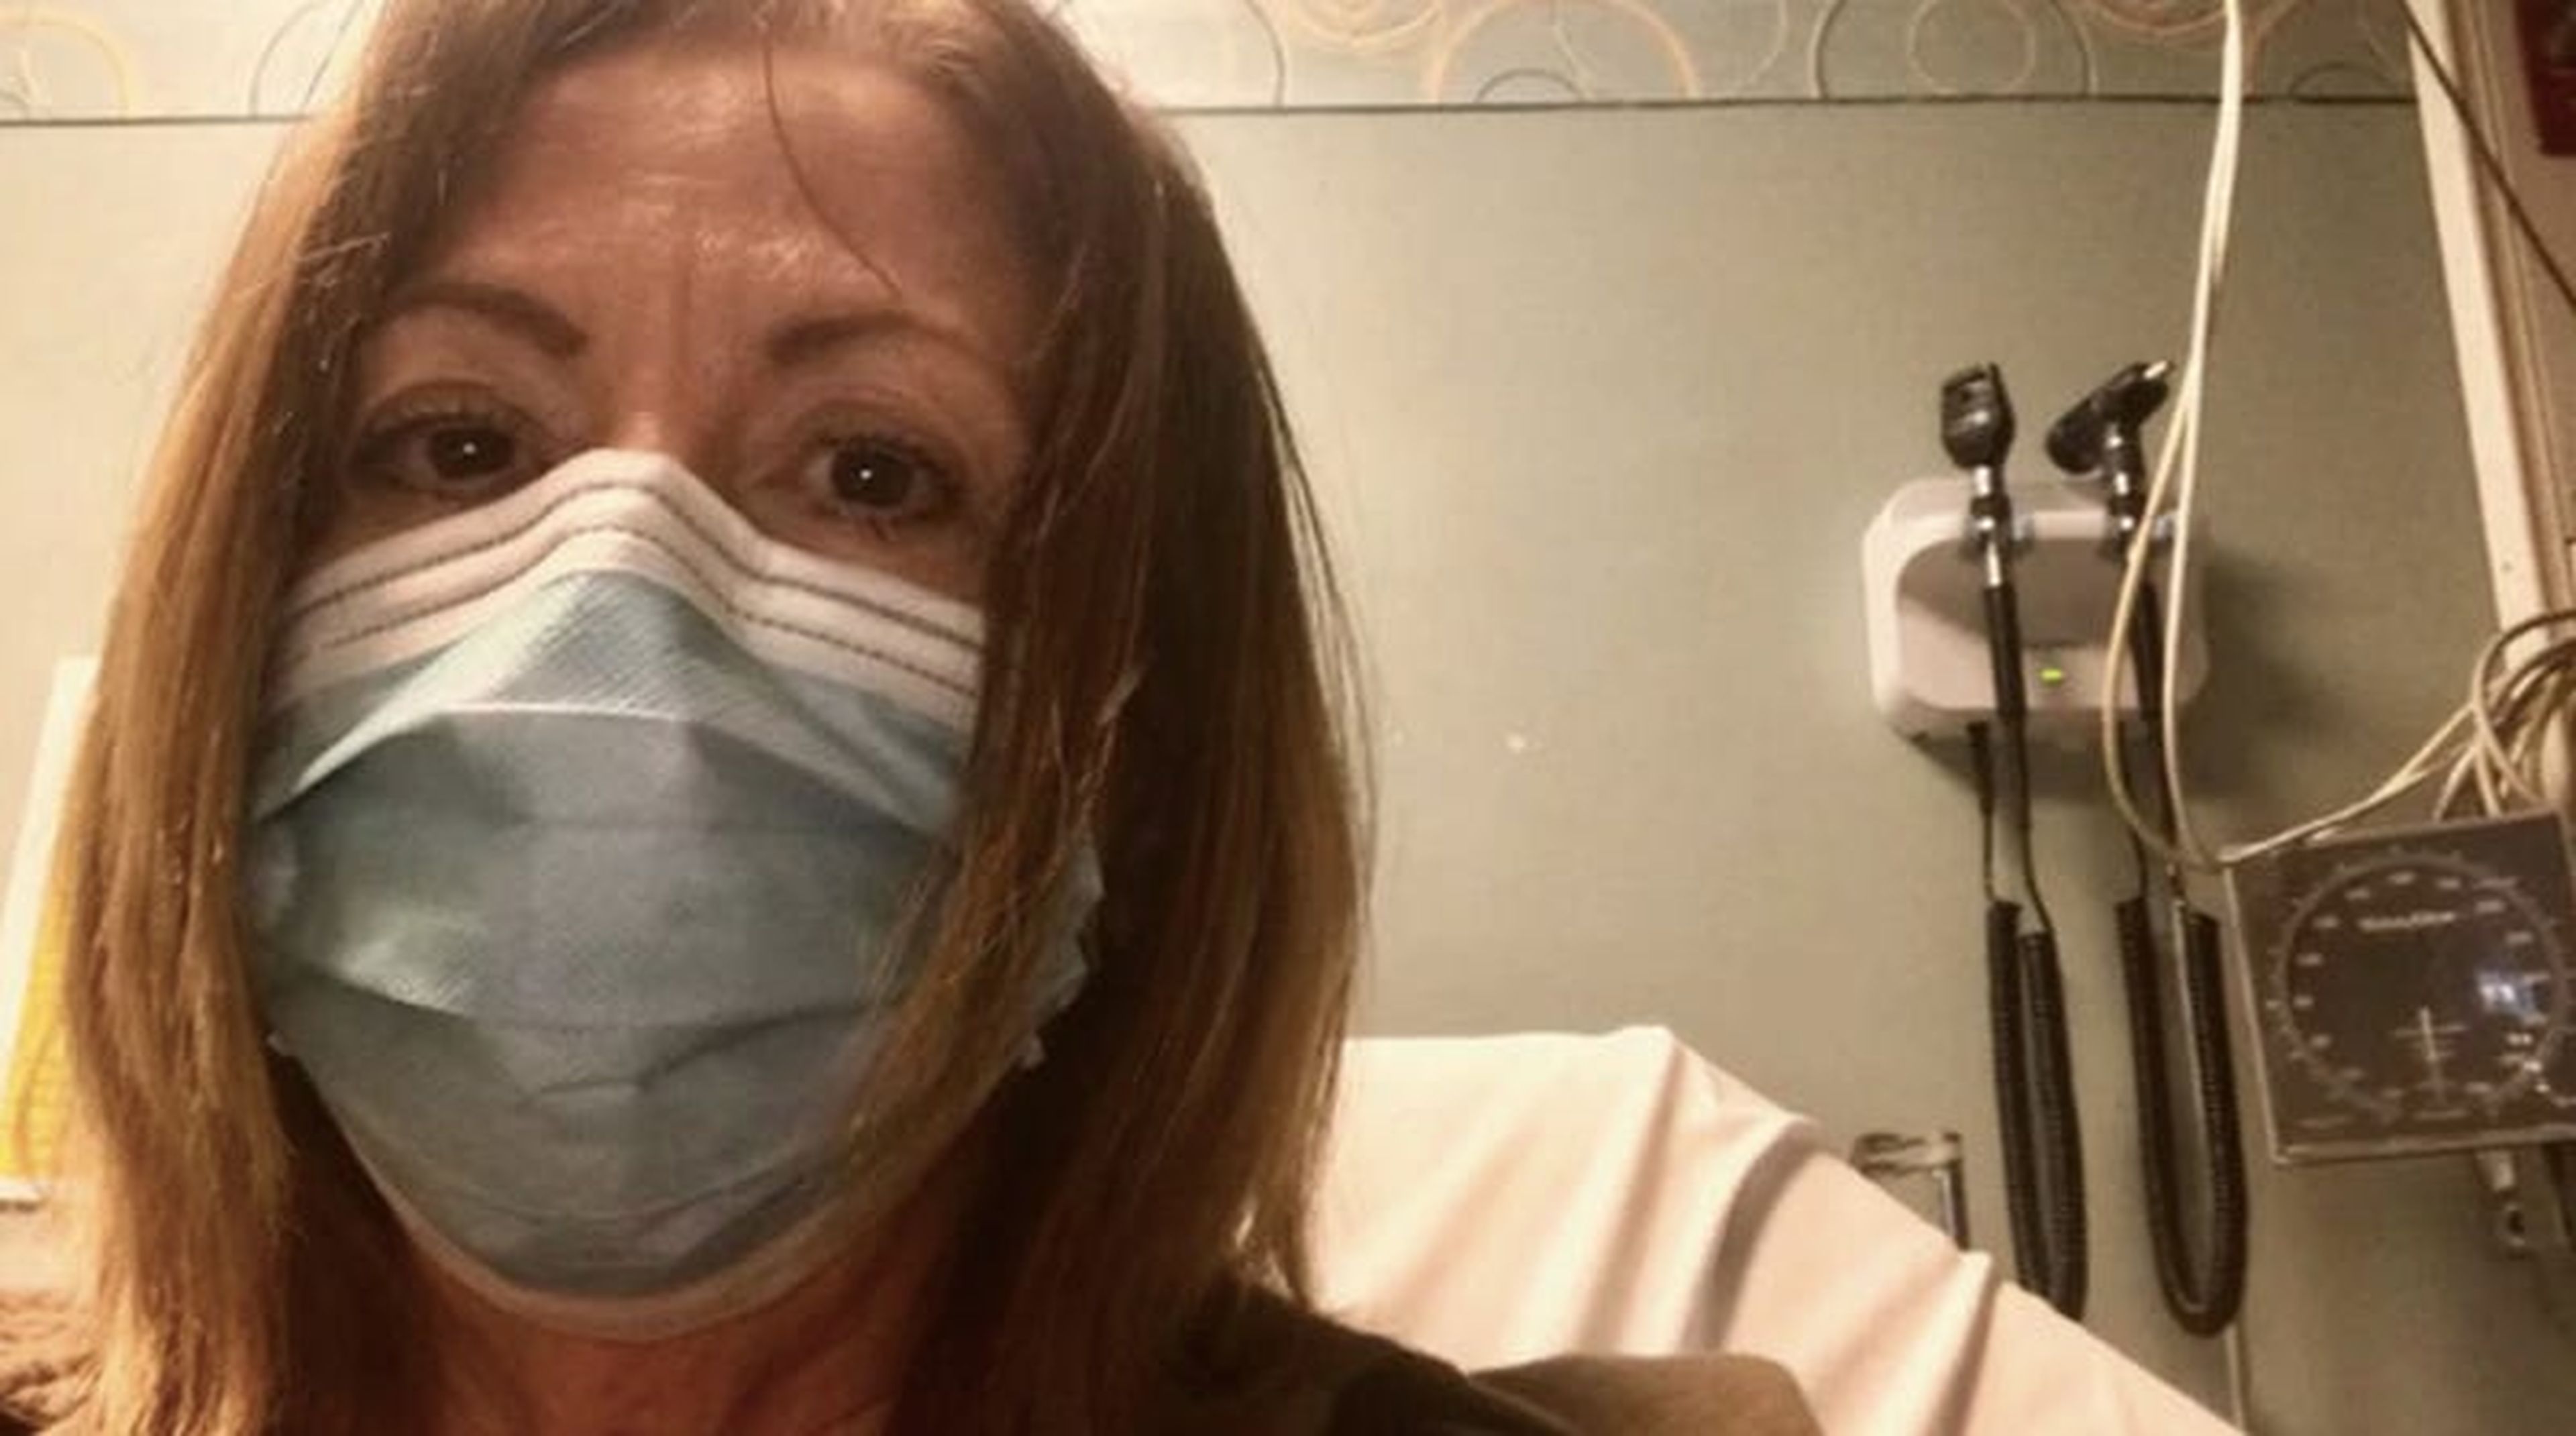 Rosemary O'Hara, editora del South Florida Sun Sentinel, comentó que sentía que necesitaba una máscara de oxígeno